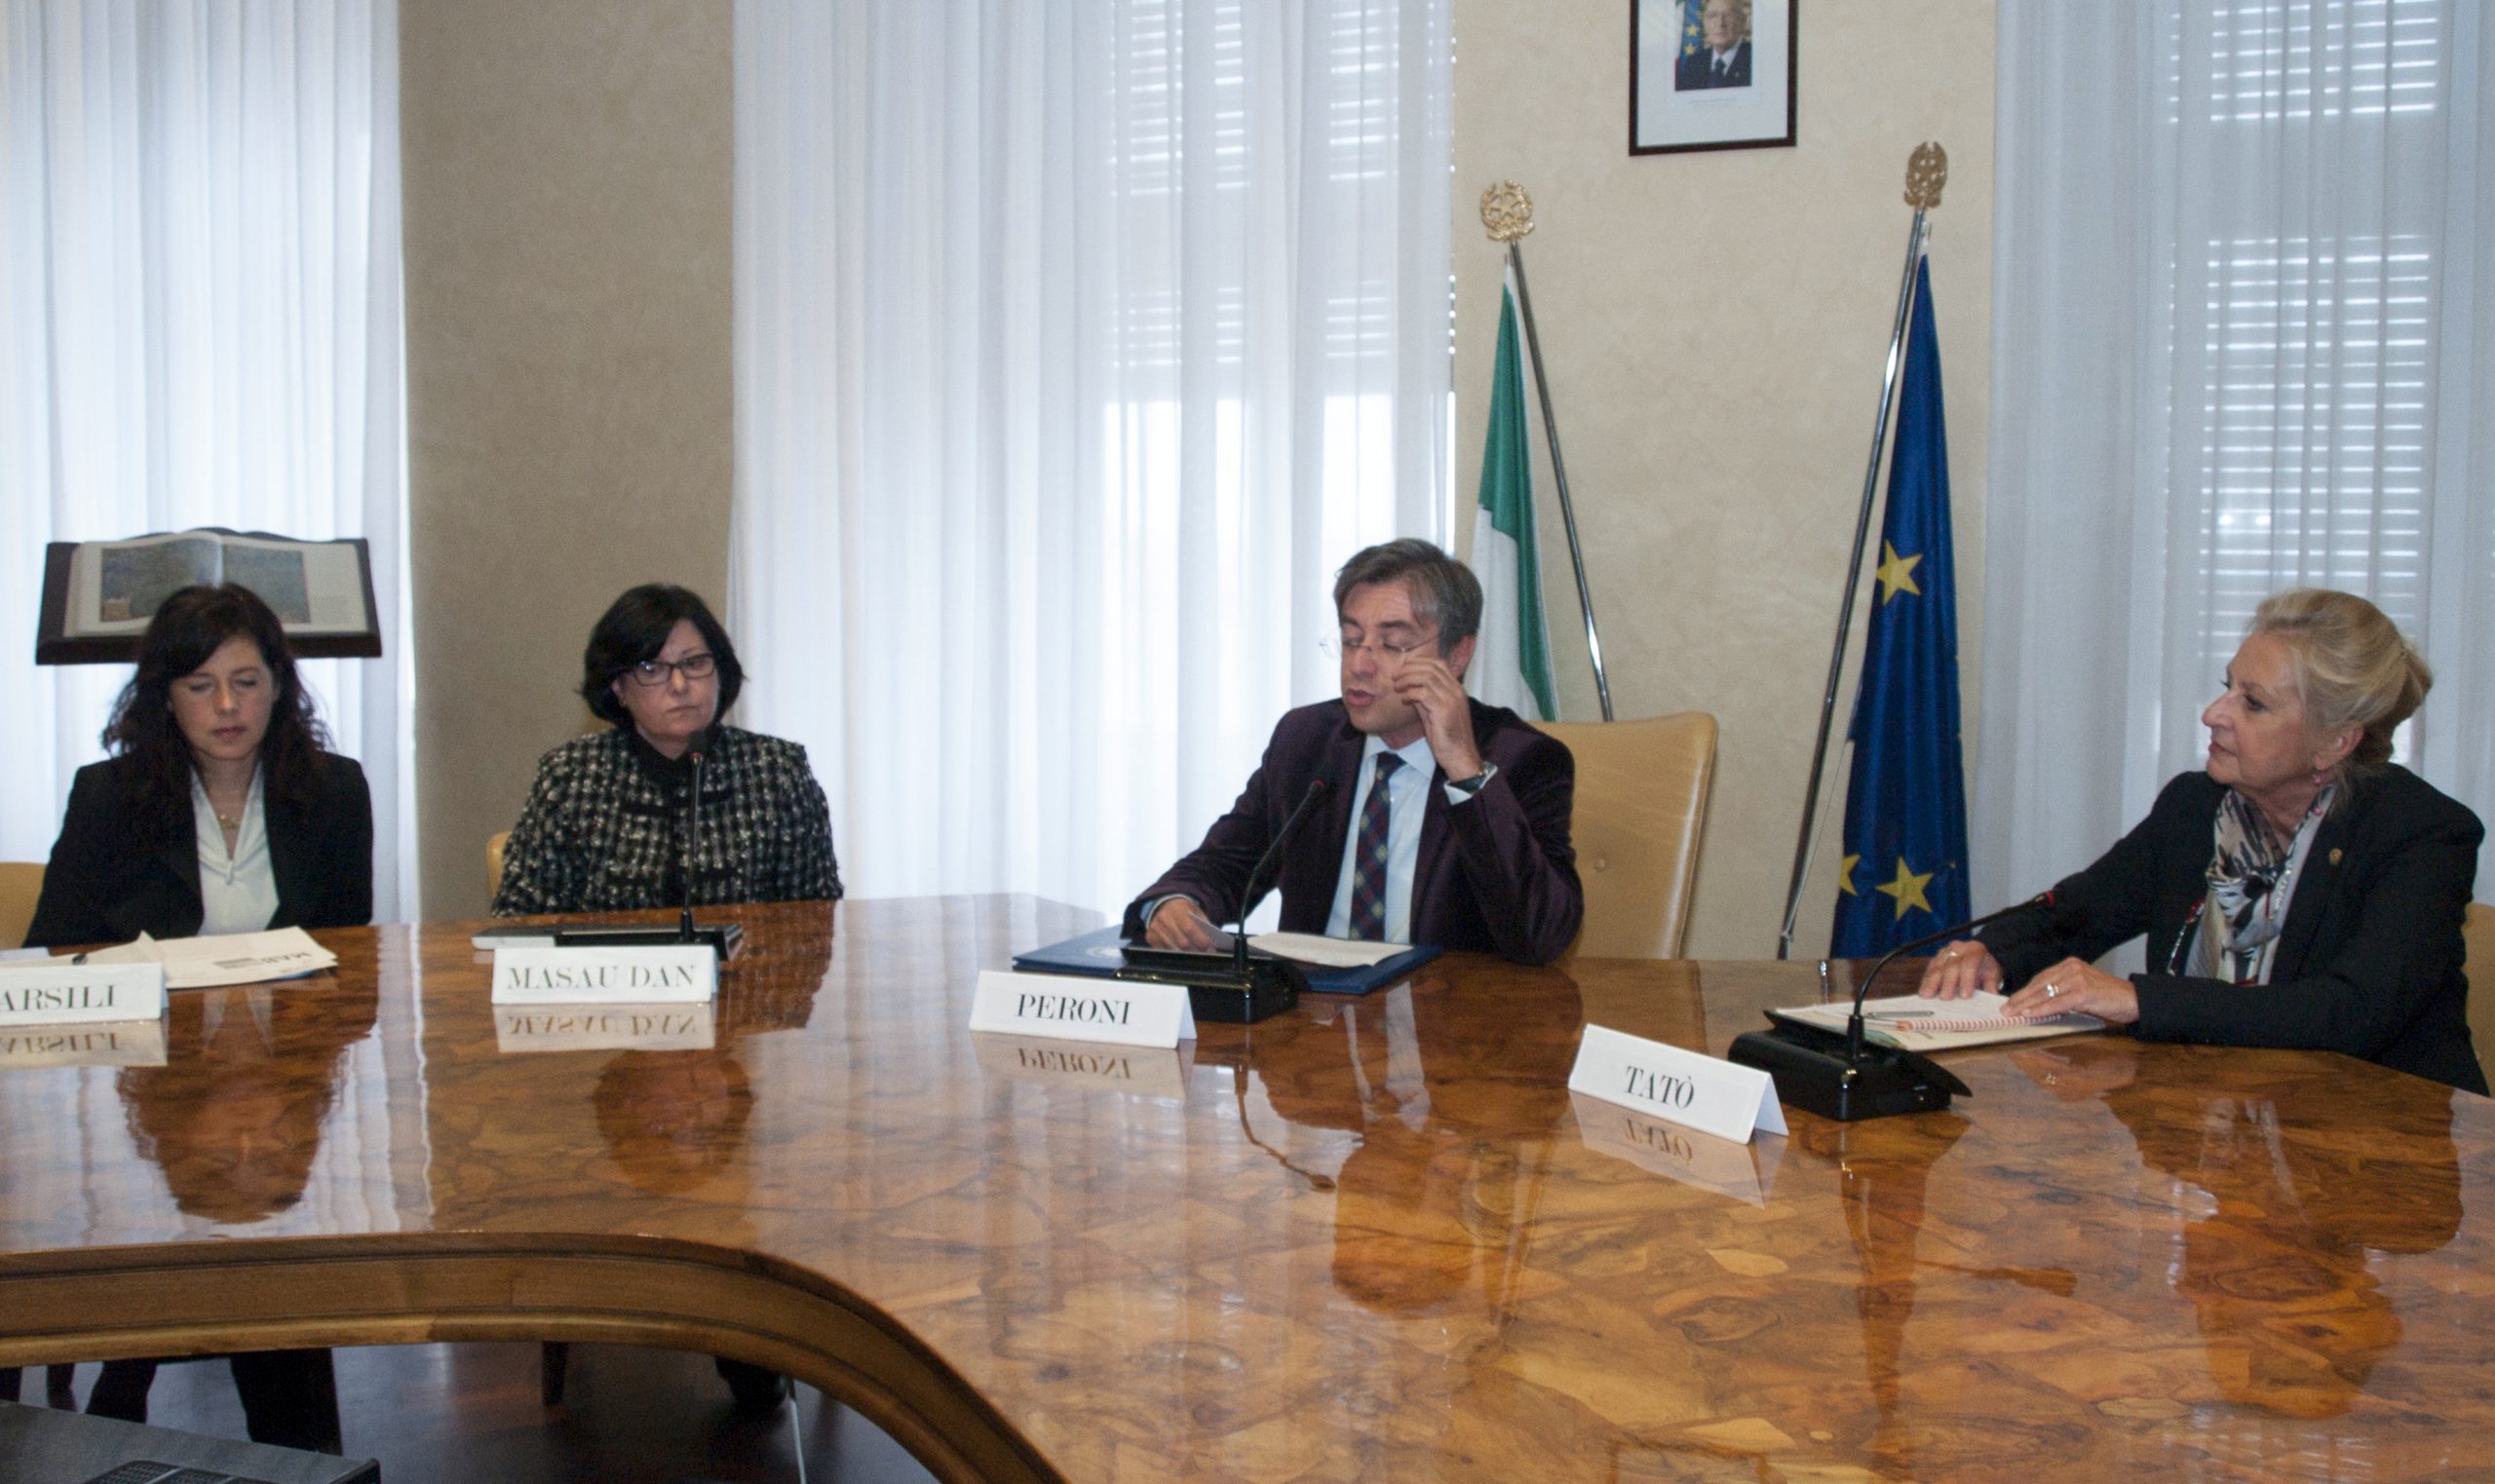 Protocollo d'intesa MAB-Università degli studi di Trieste - 17 ottobre 2012